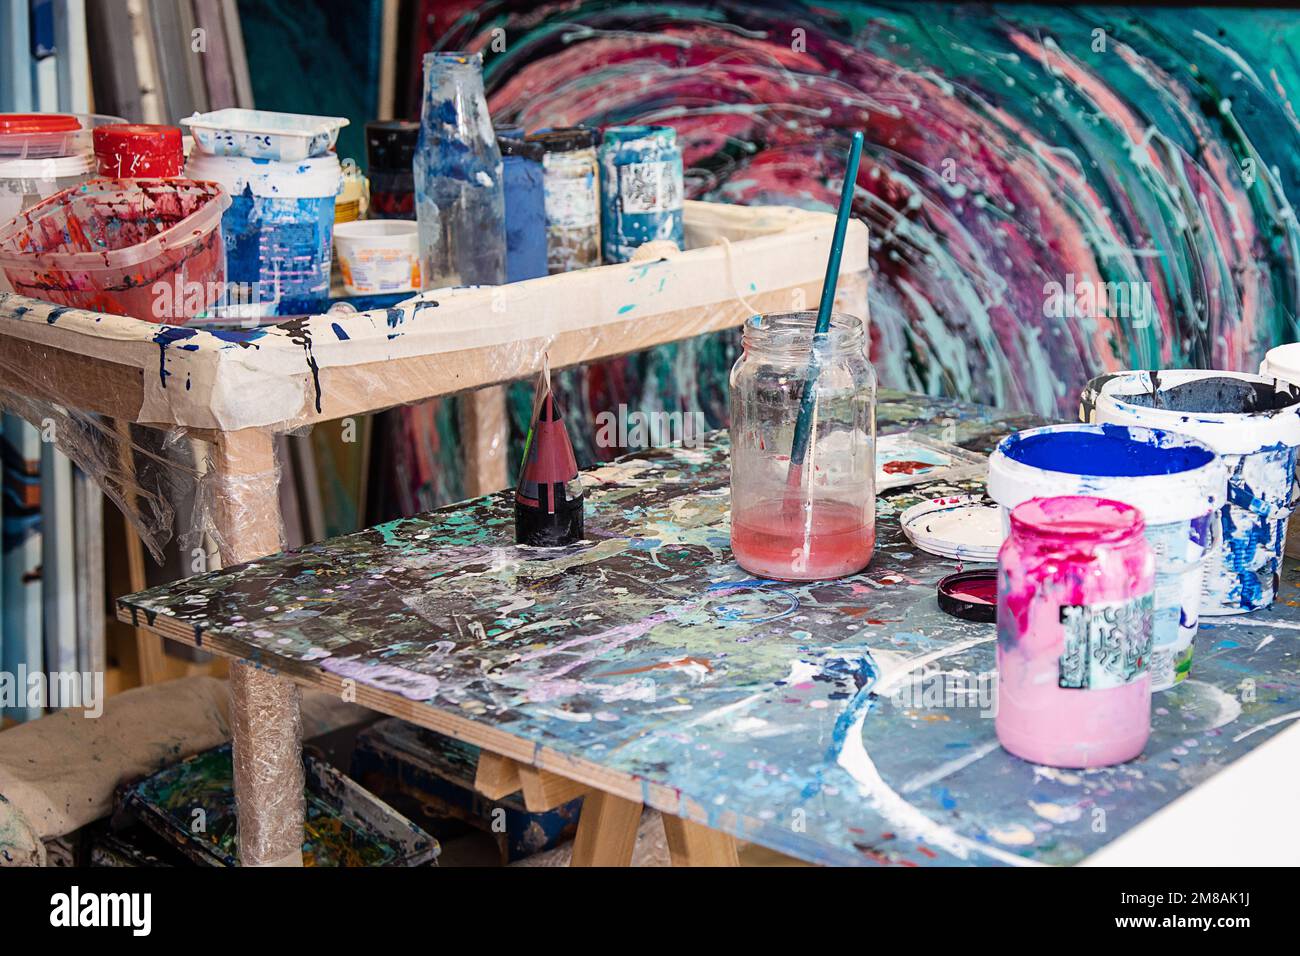 Interieur des Workshops für kreative Kunst. Verschiedene Eimer mit Farbe, schmutzige Glasgefäße, Holzschreibtische mit Farbe befleckt. Stockfoto